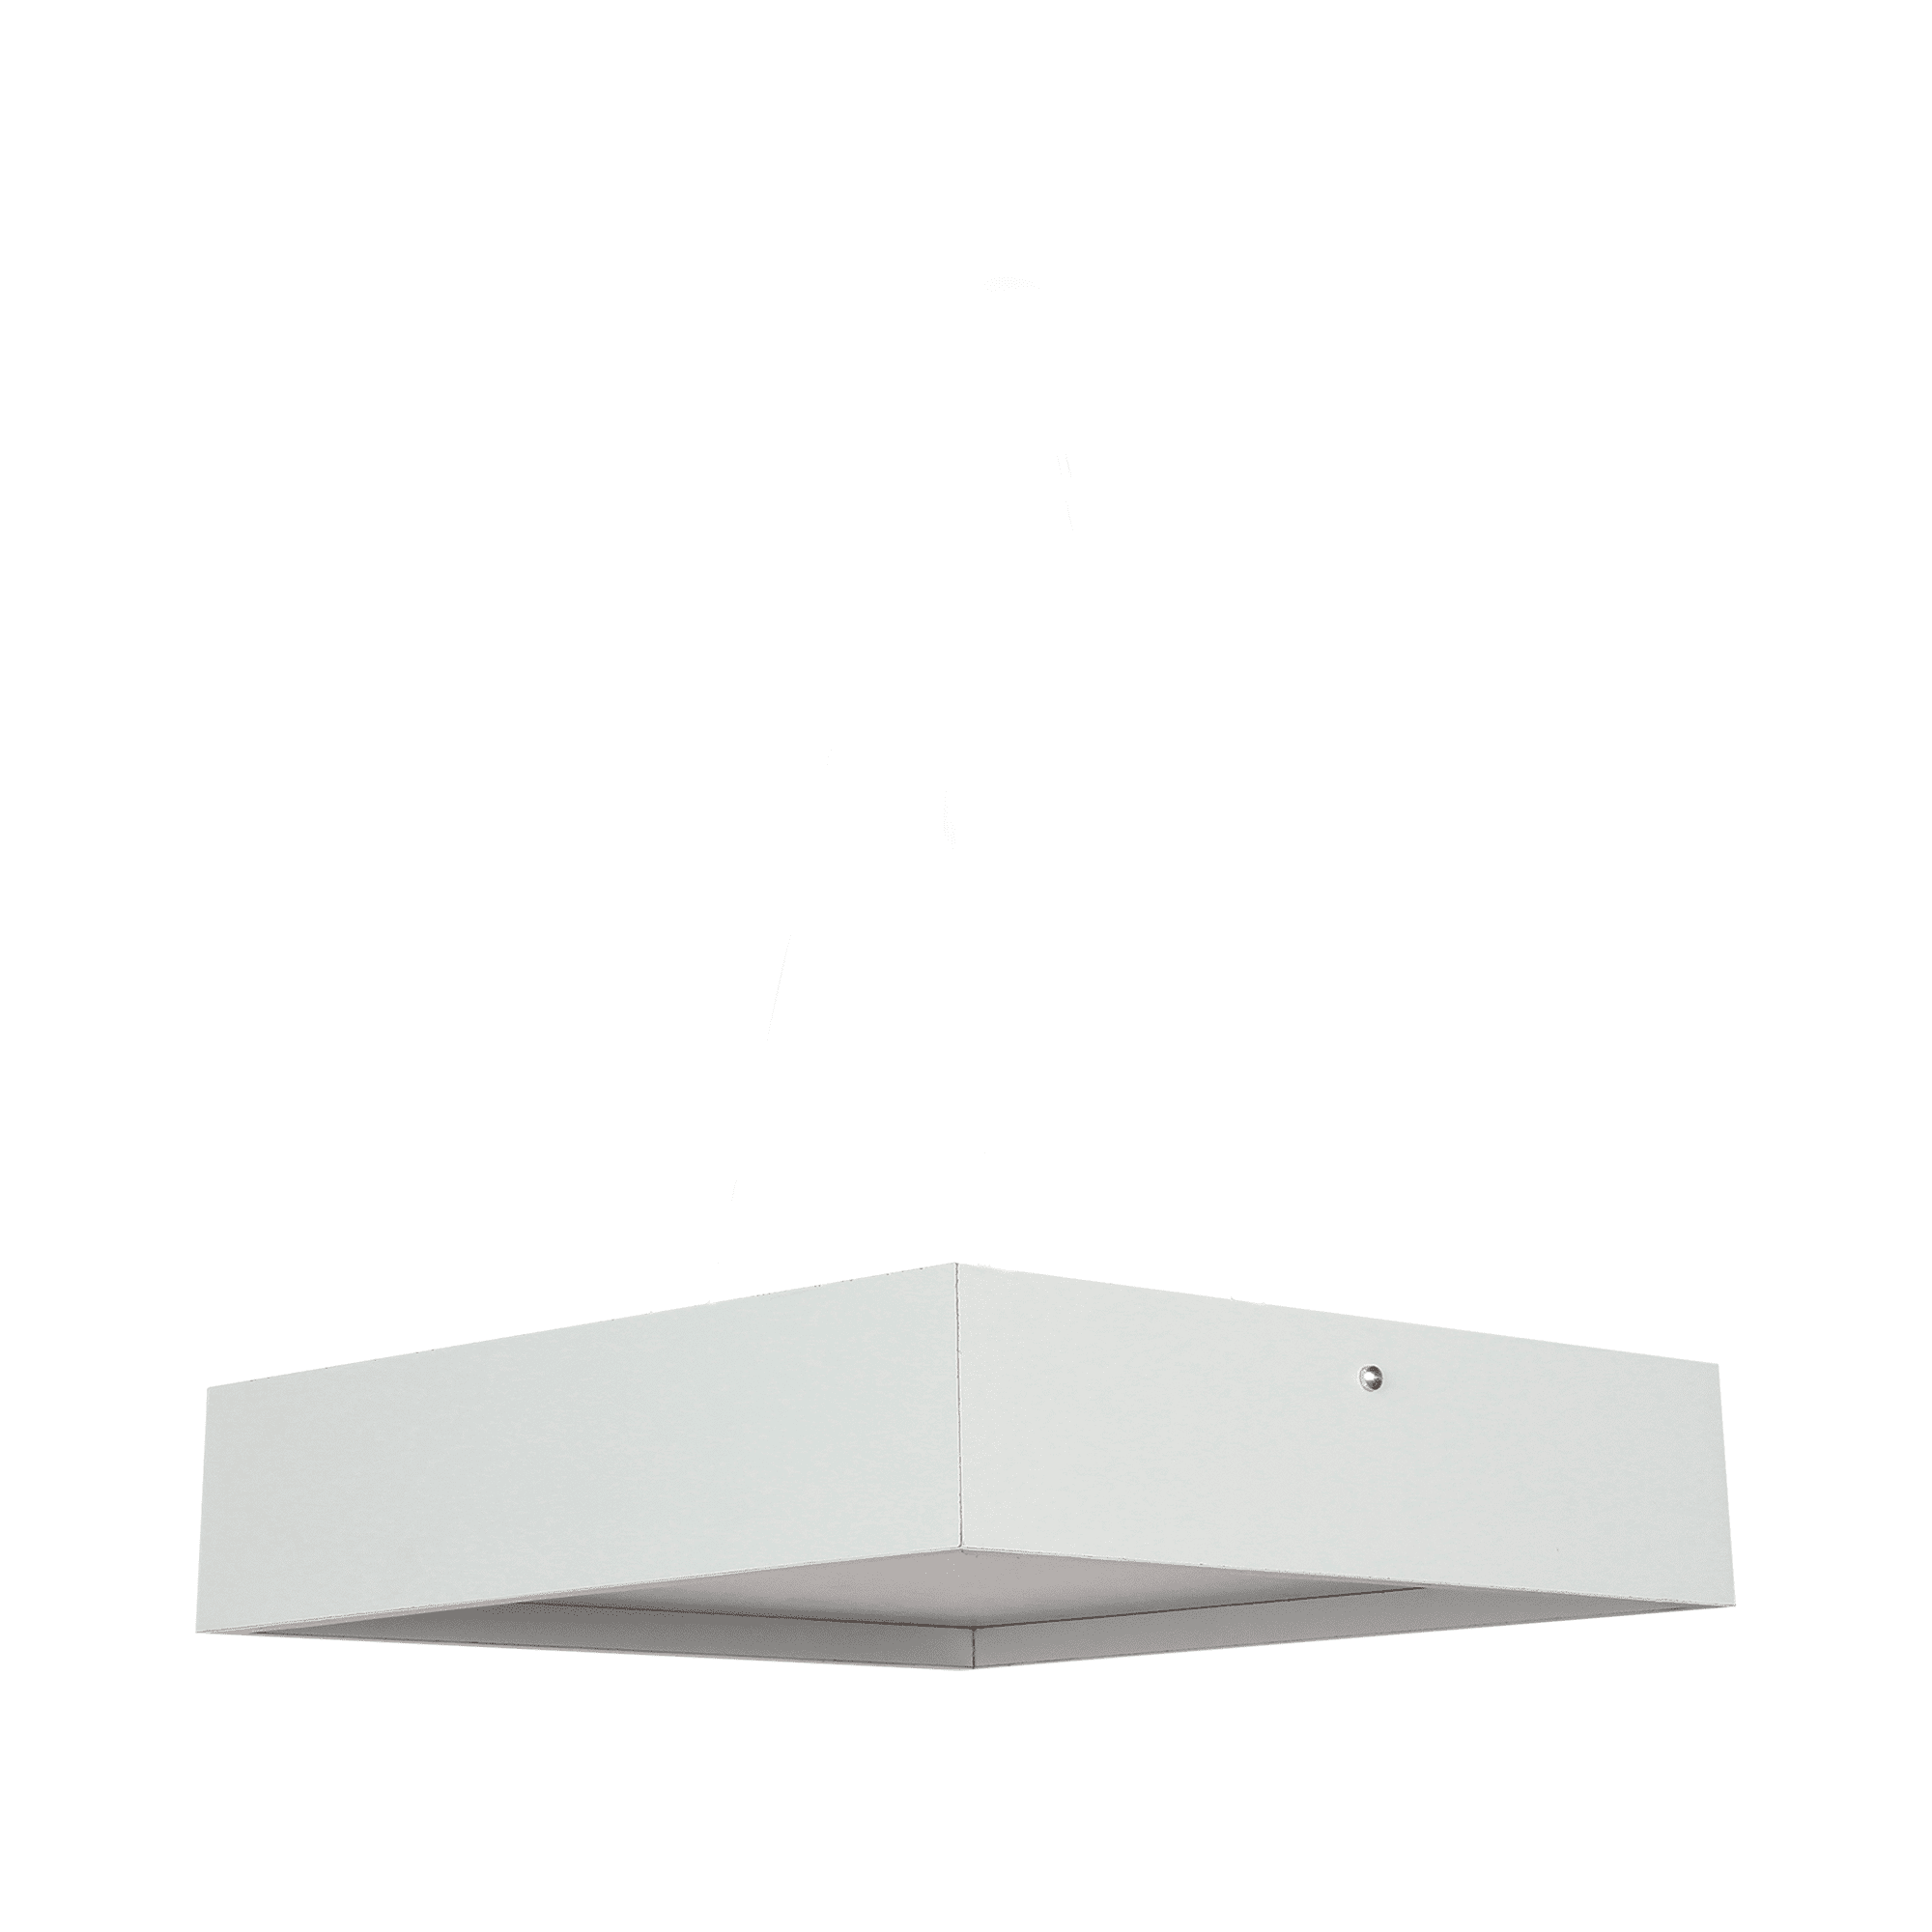 Plafon Quadrado Madeira Branco 25x25cm - 2